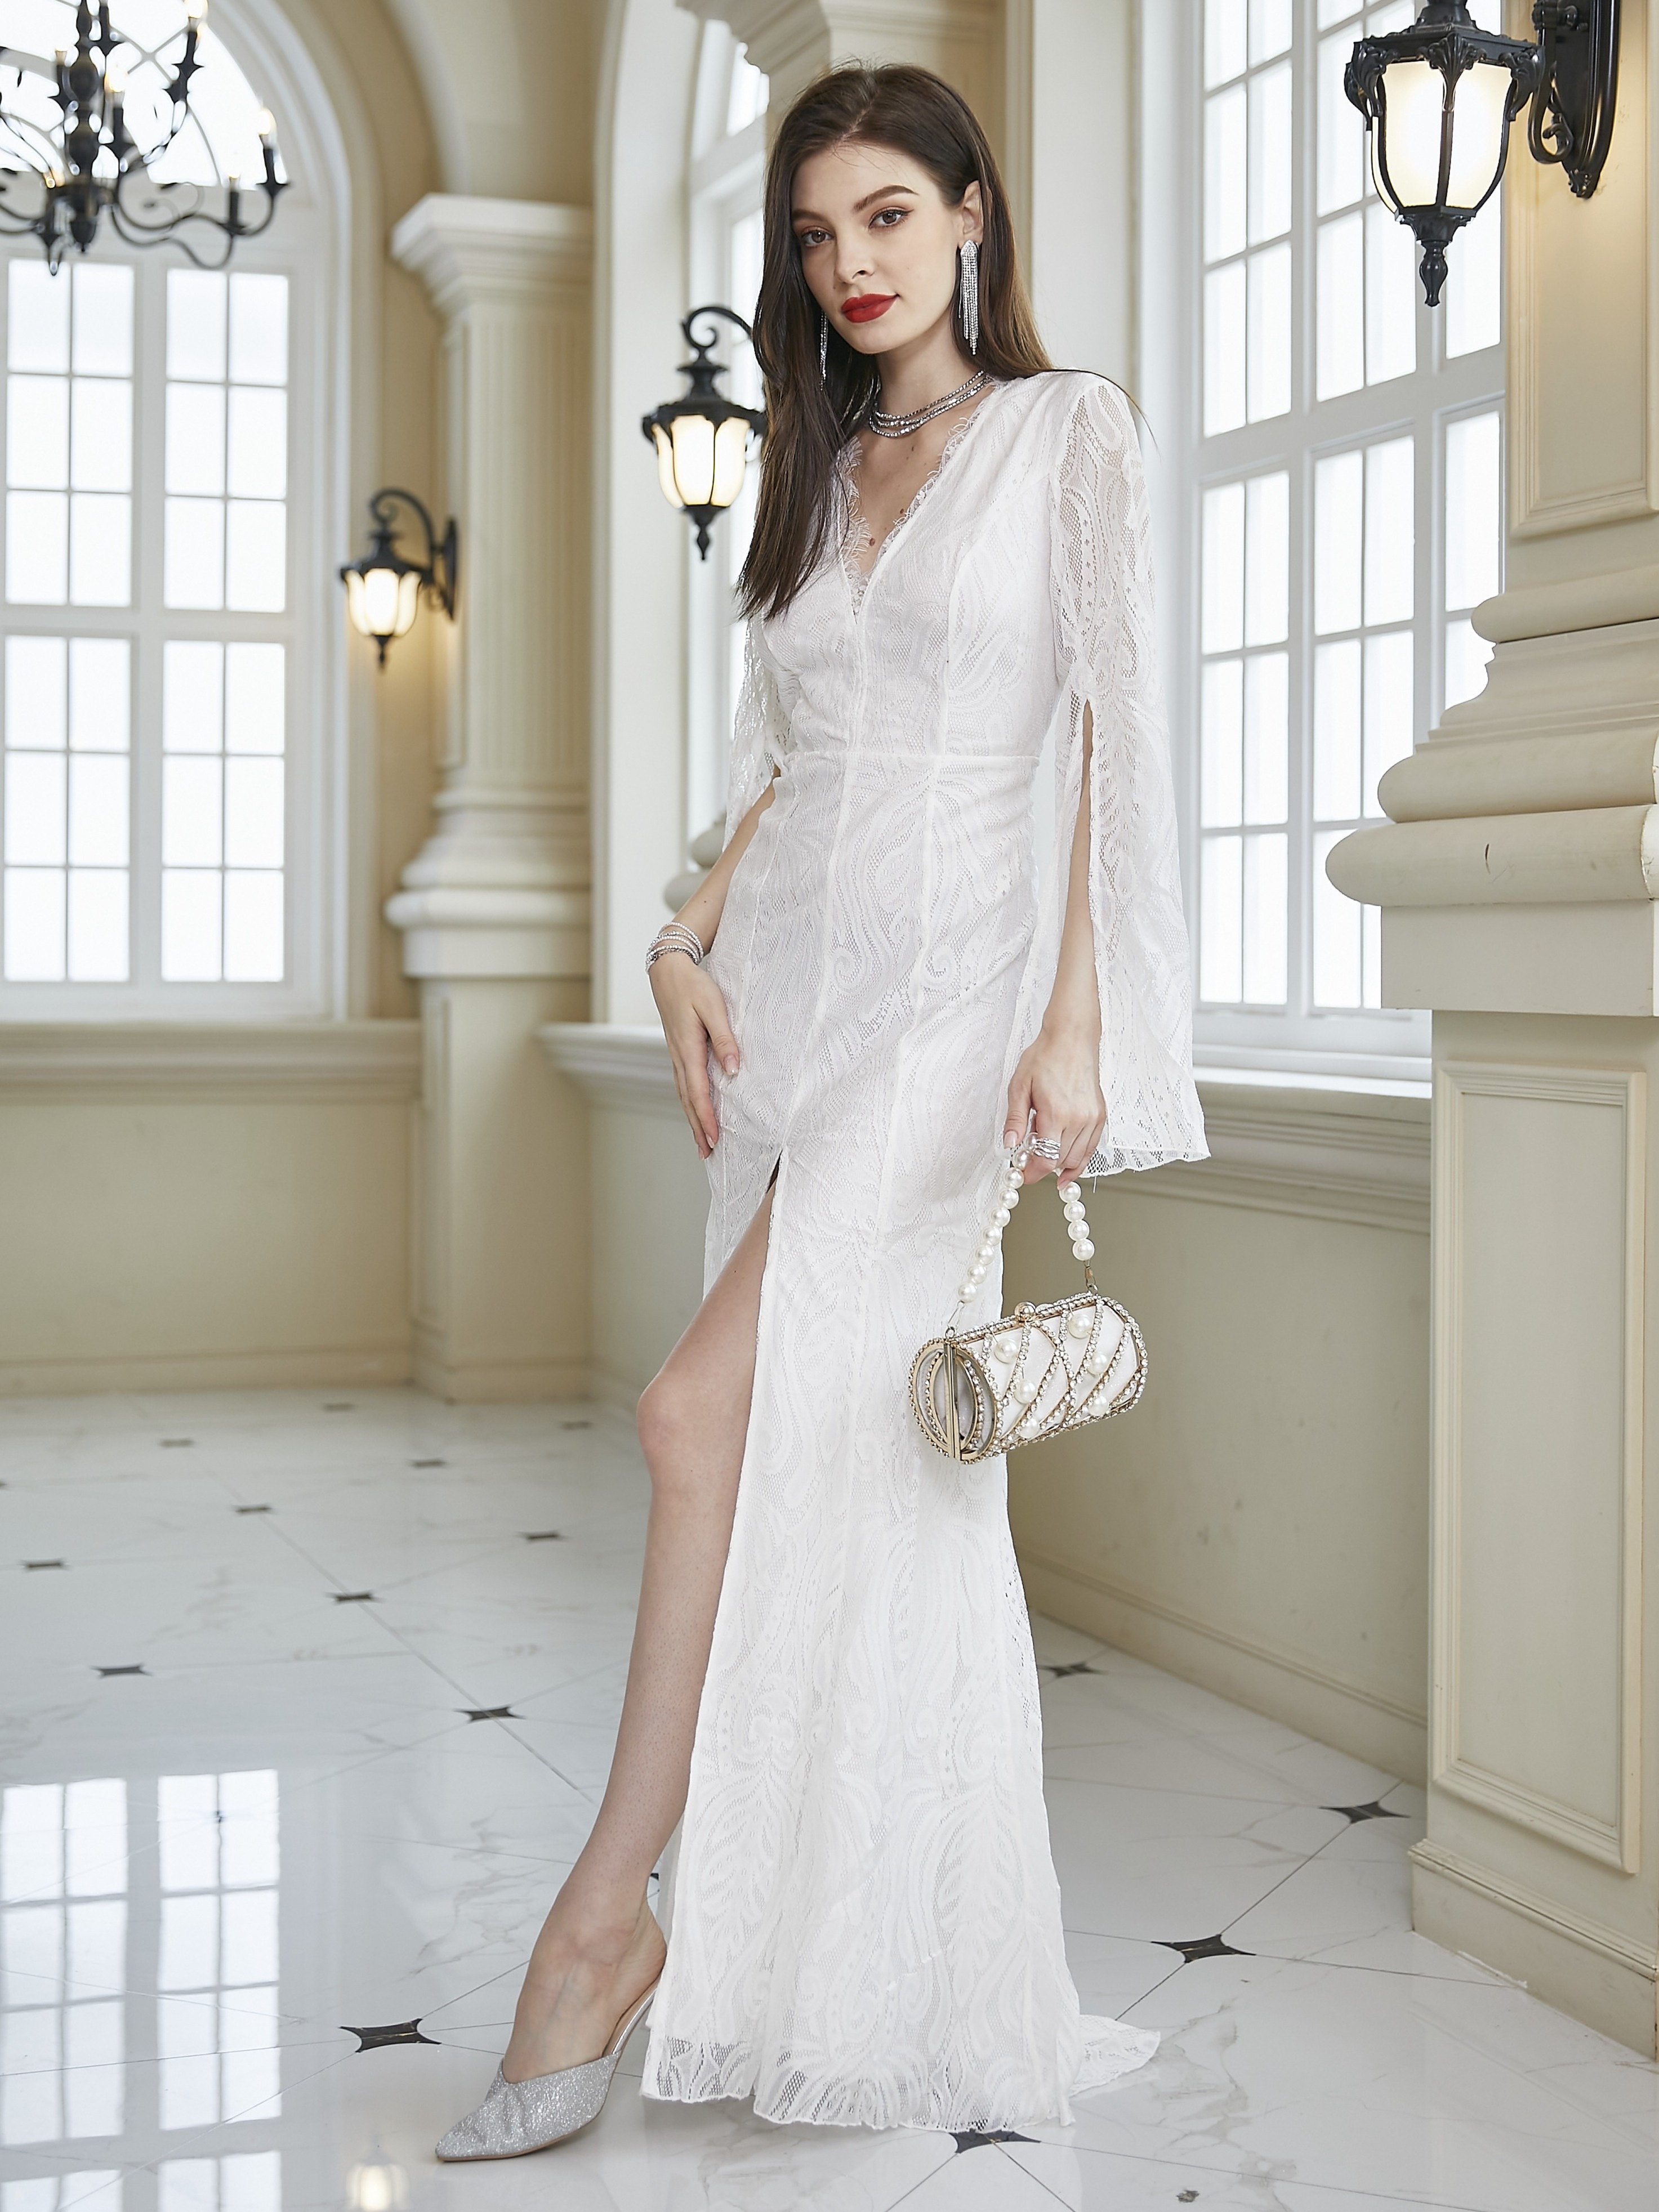 Lace Split Wedding Dress, Elegant Long Sleeve Plunging V-neck Wedding  Dress, Women's Clothing